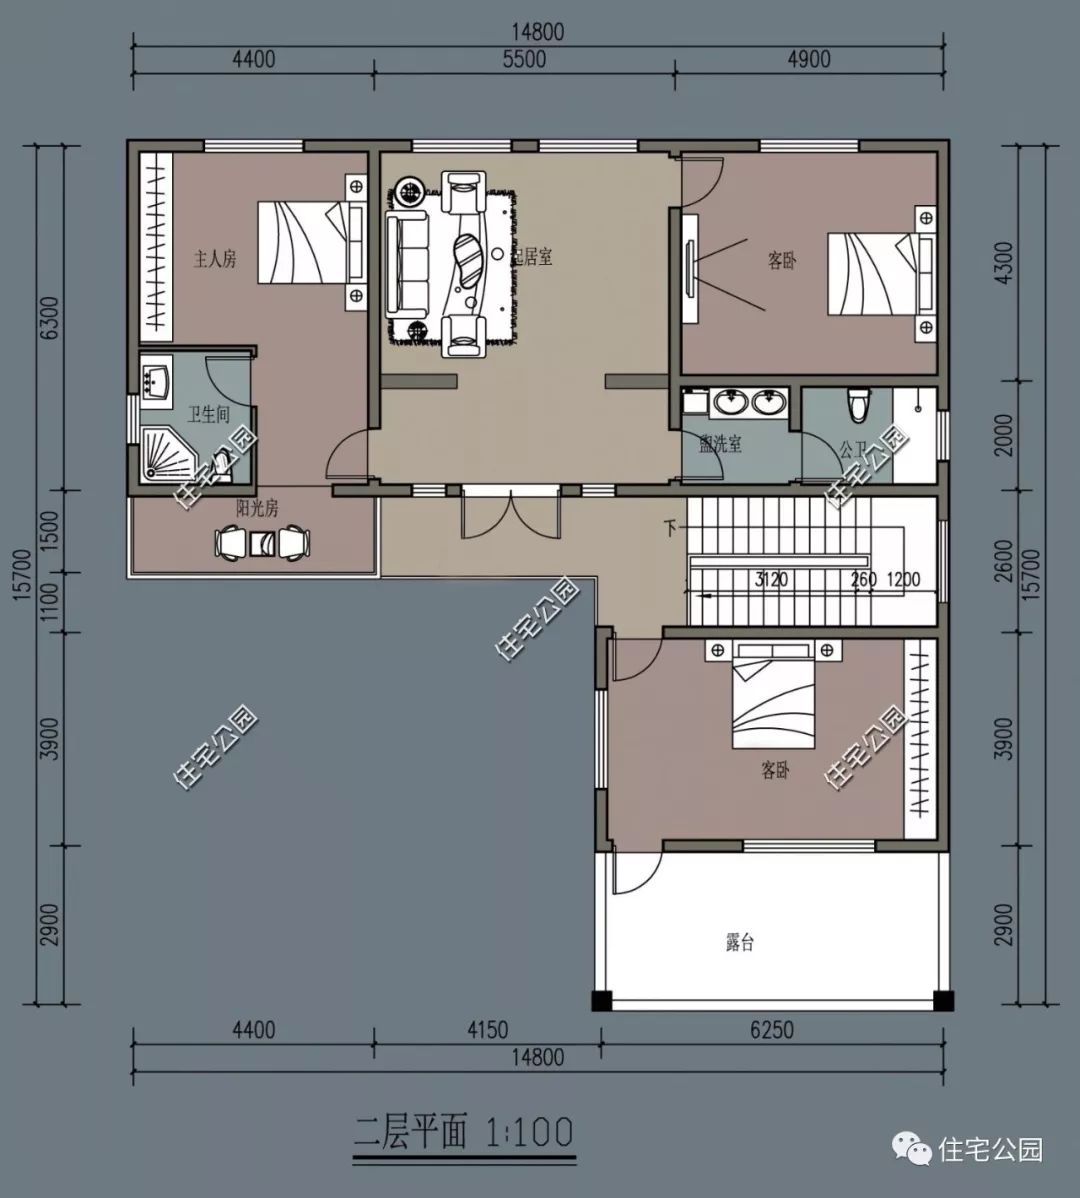 居室虽小,心有大雅,16×18米新中式小院